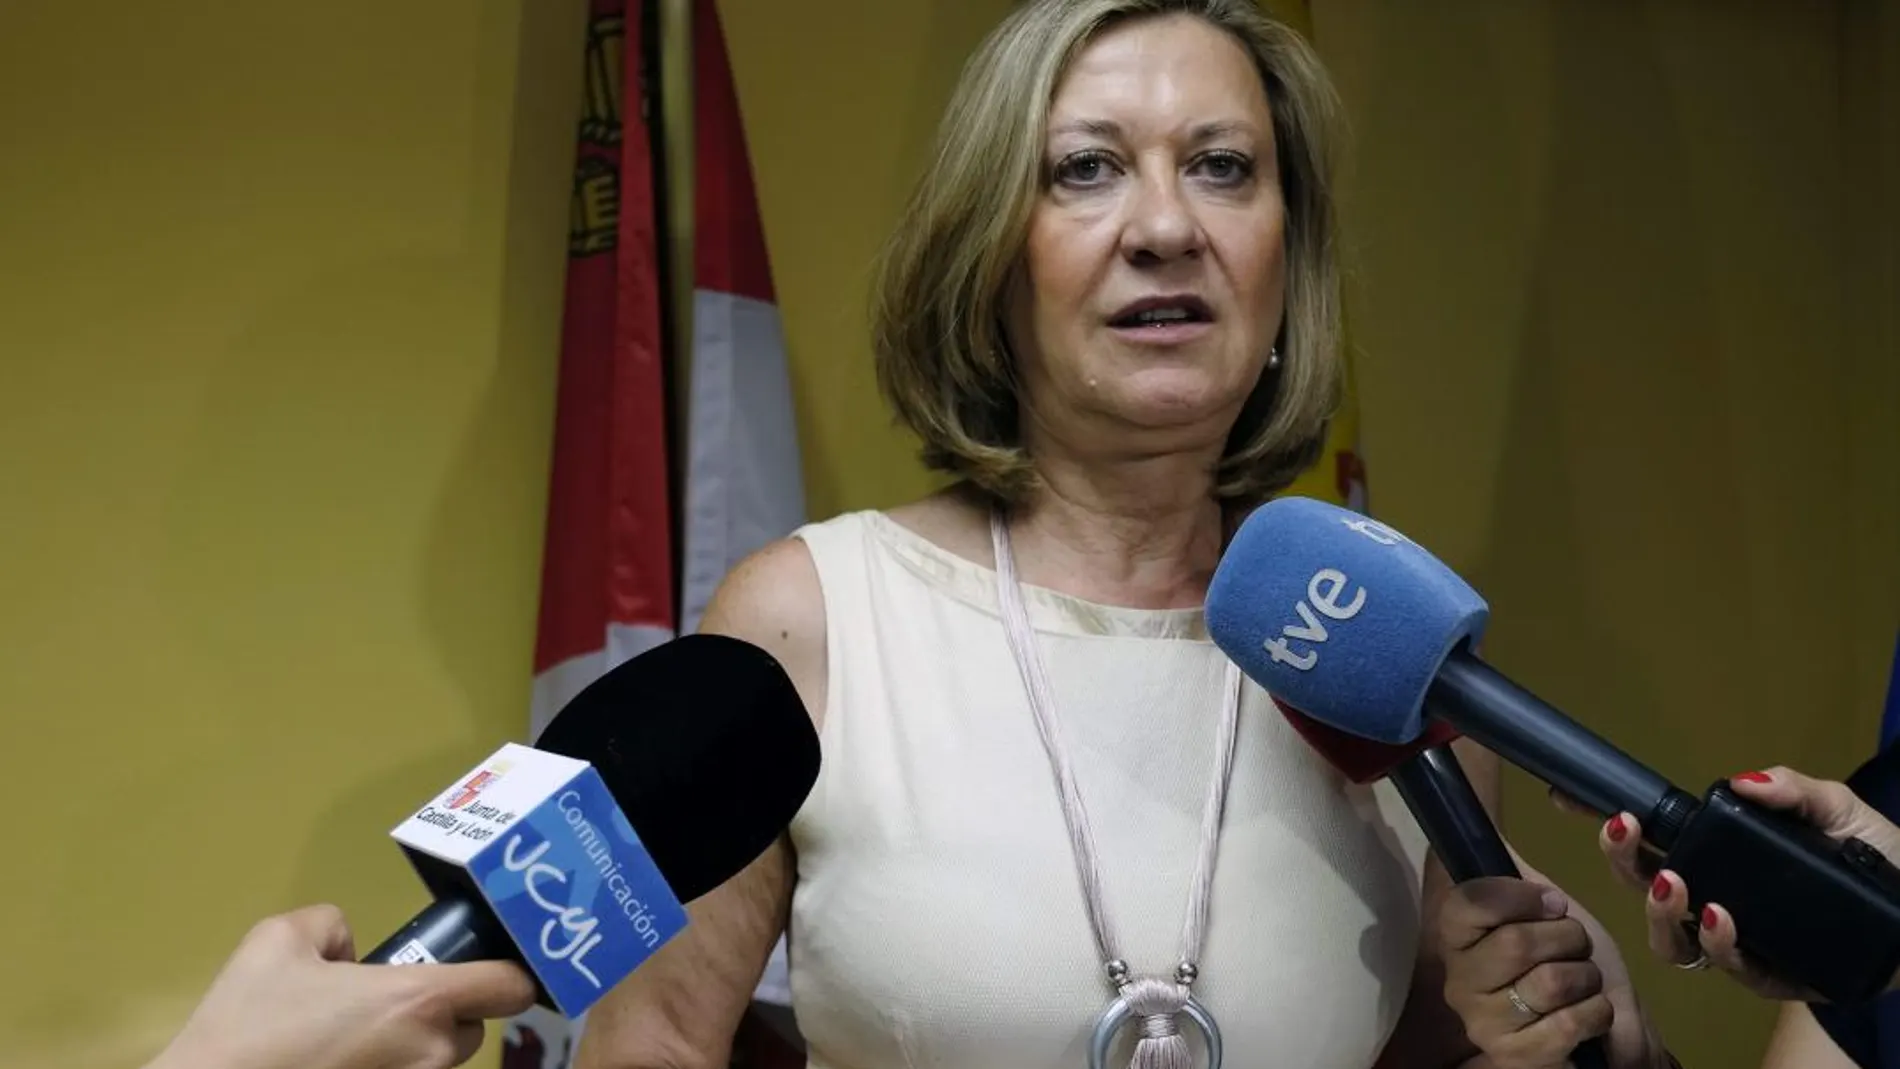 La consejera de Economía y Hacienda, Pilar del Olmo, atiende a los medios para dar su parecer sobre el aumento de déficit por parte del Gobierno